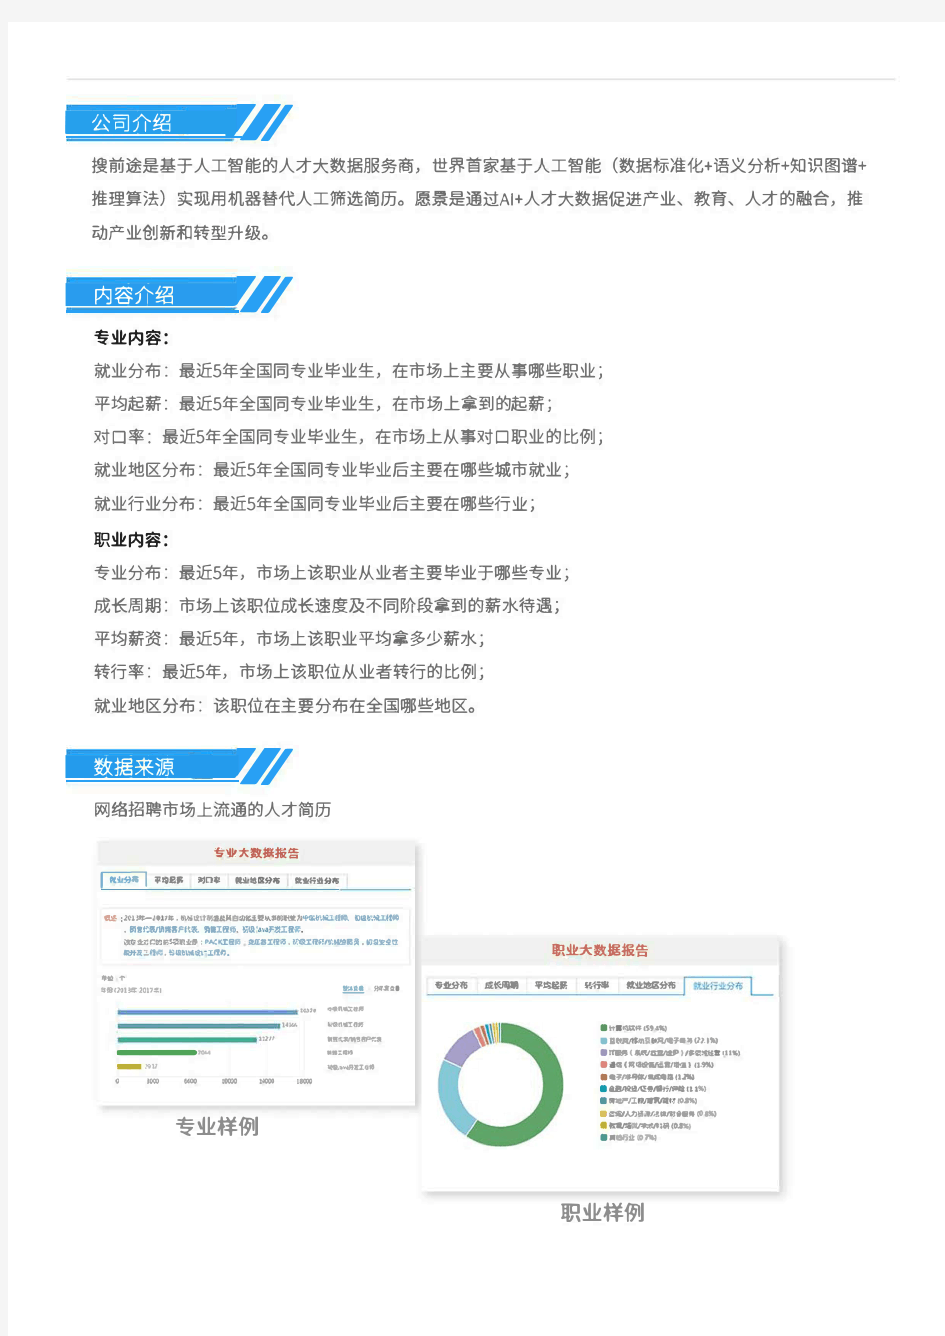 2013-2017年北京化工大学机械类专业毕业生就业大数据报告